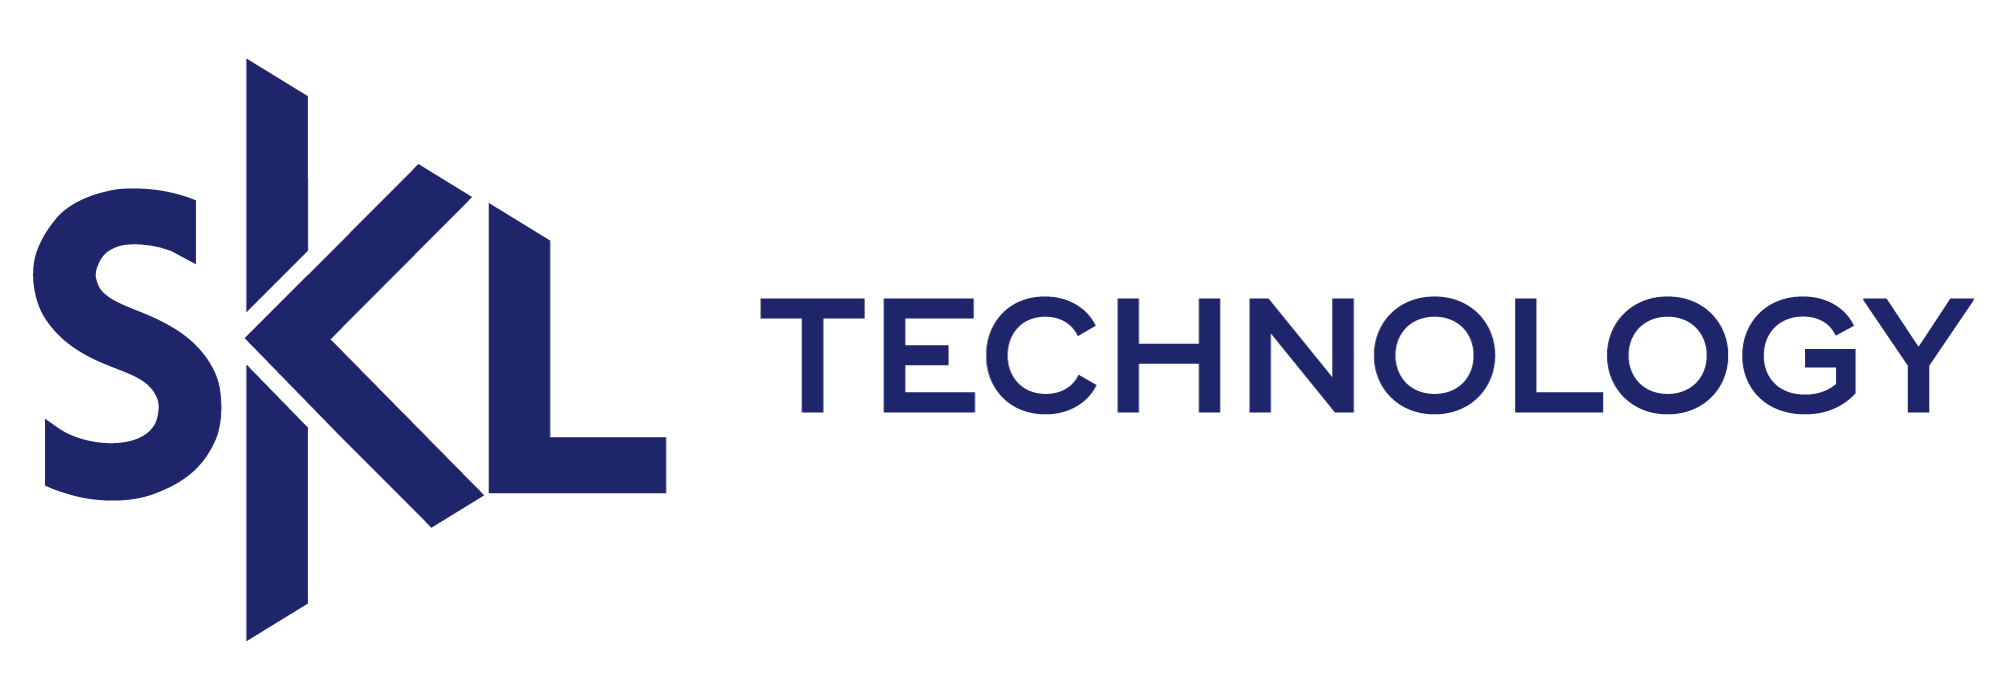 SKLTech-Logo-DarkBlue